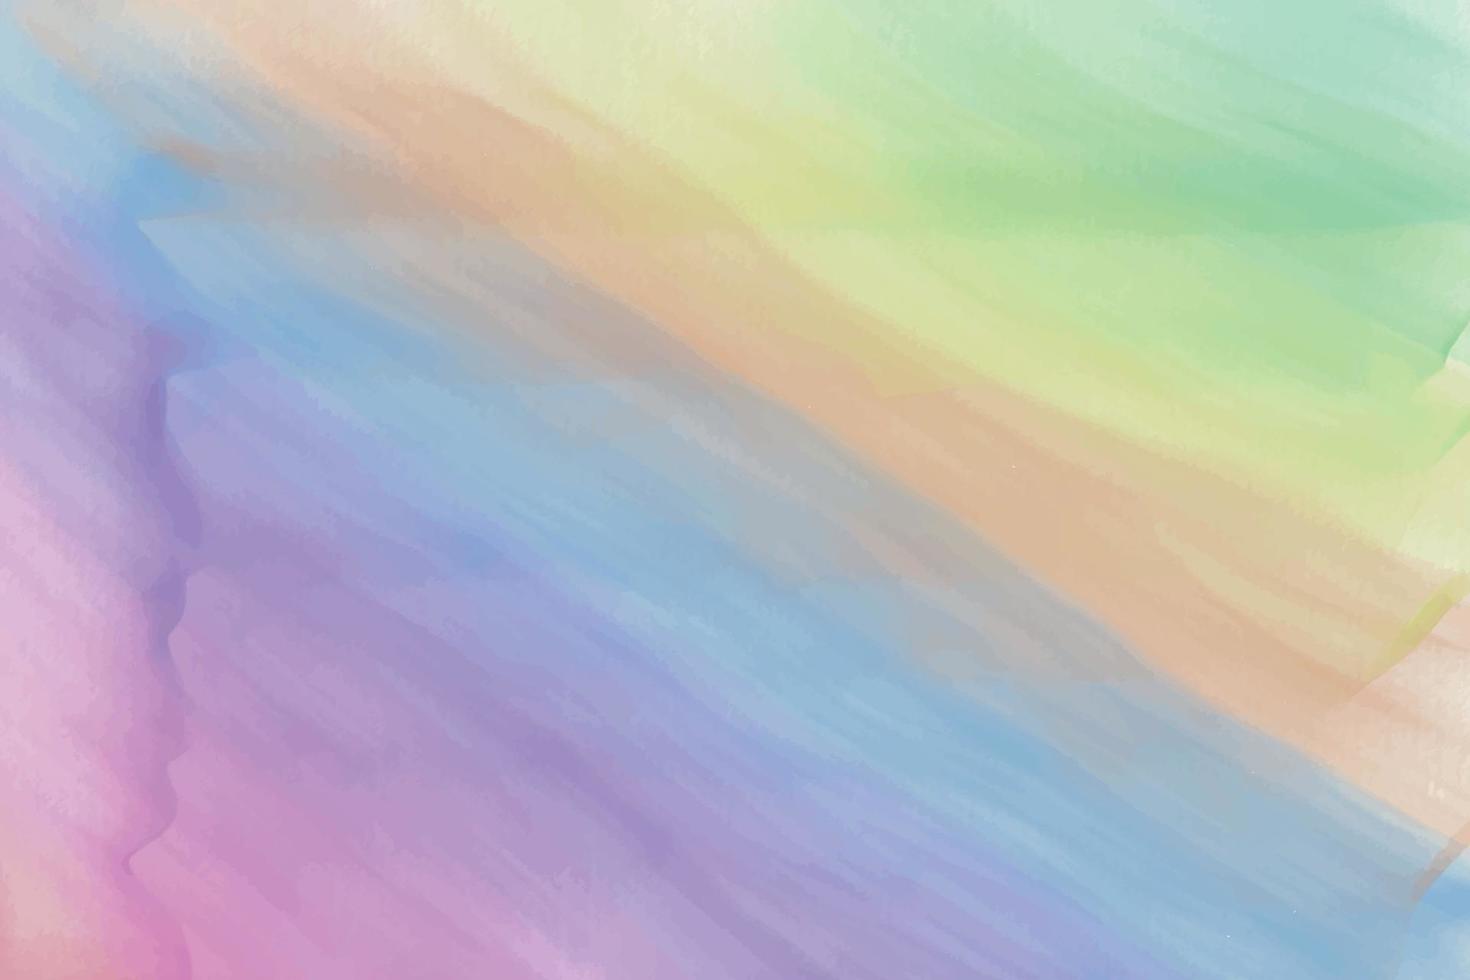 vattenfärg pastell bakgrund hand målad. akvarell färgrik fläckar på papper vektor